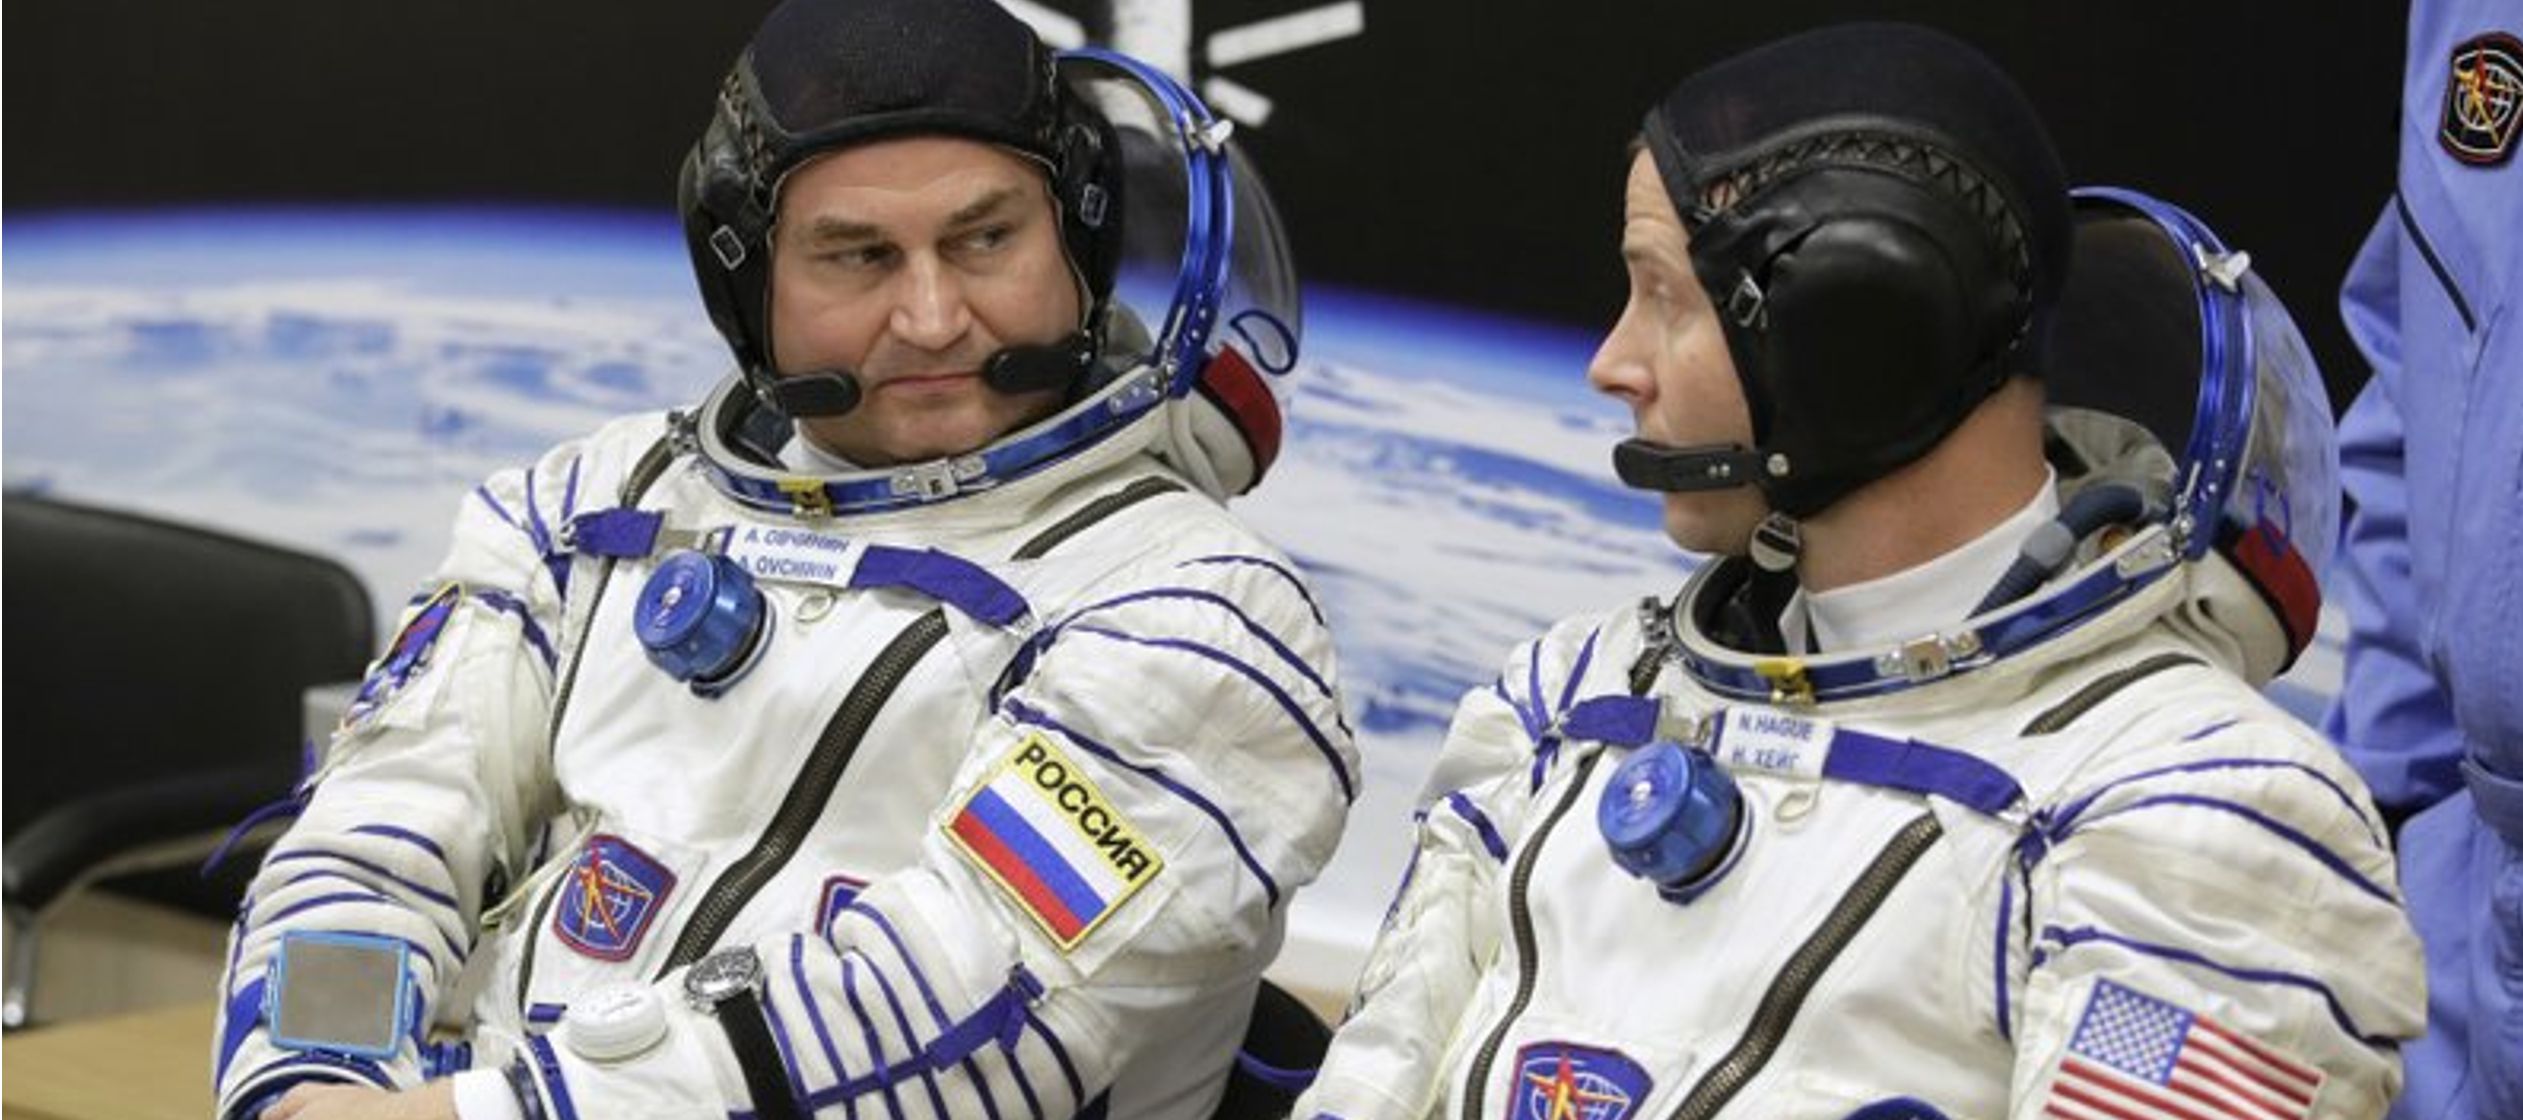 El problema fue el más reciente entre varios que ha tenido el programa espacial ruso que...